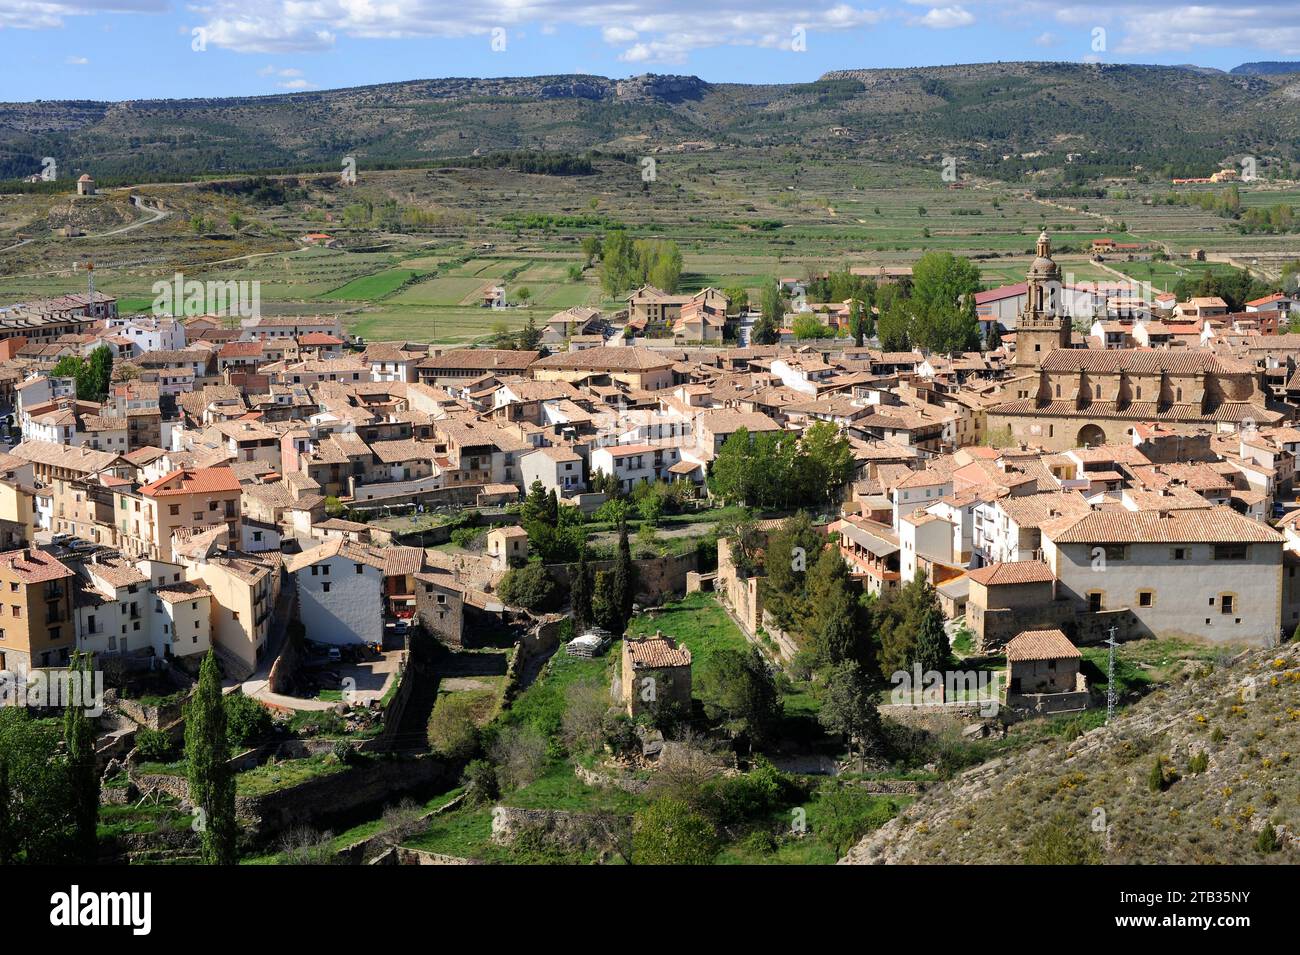 Rubielos de Mora. Gudar-Javalambre region, Teruel province, Aragon, Spain. Stock Photo